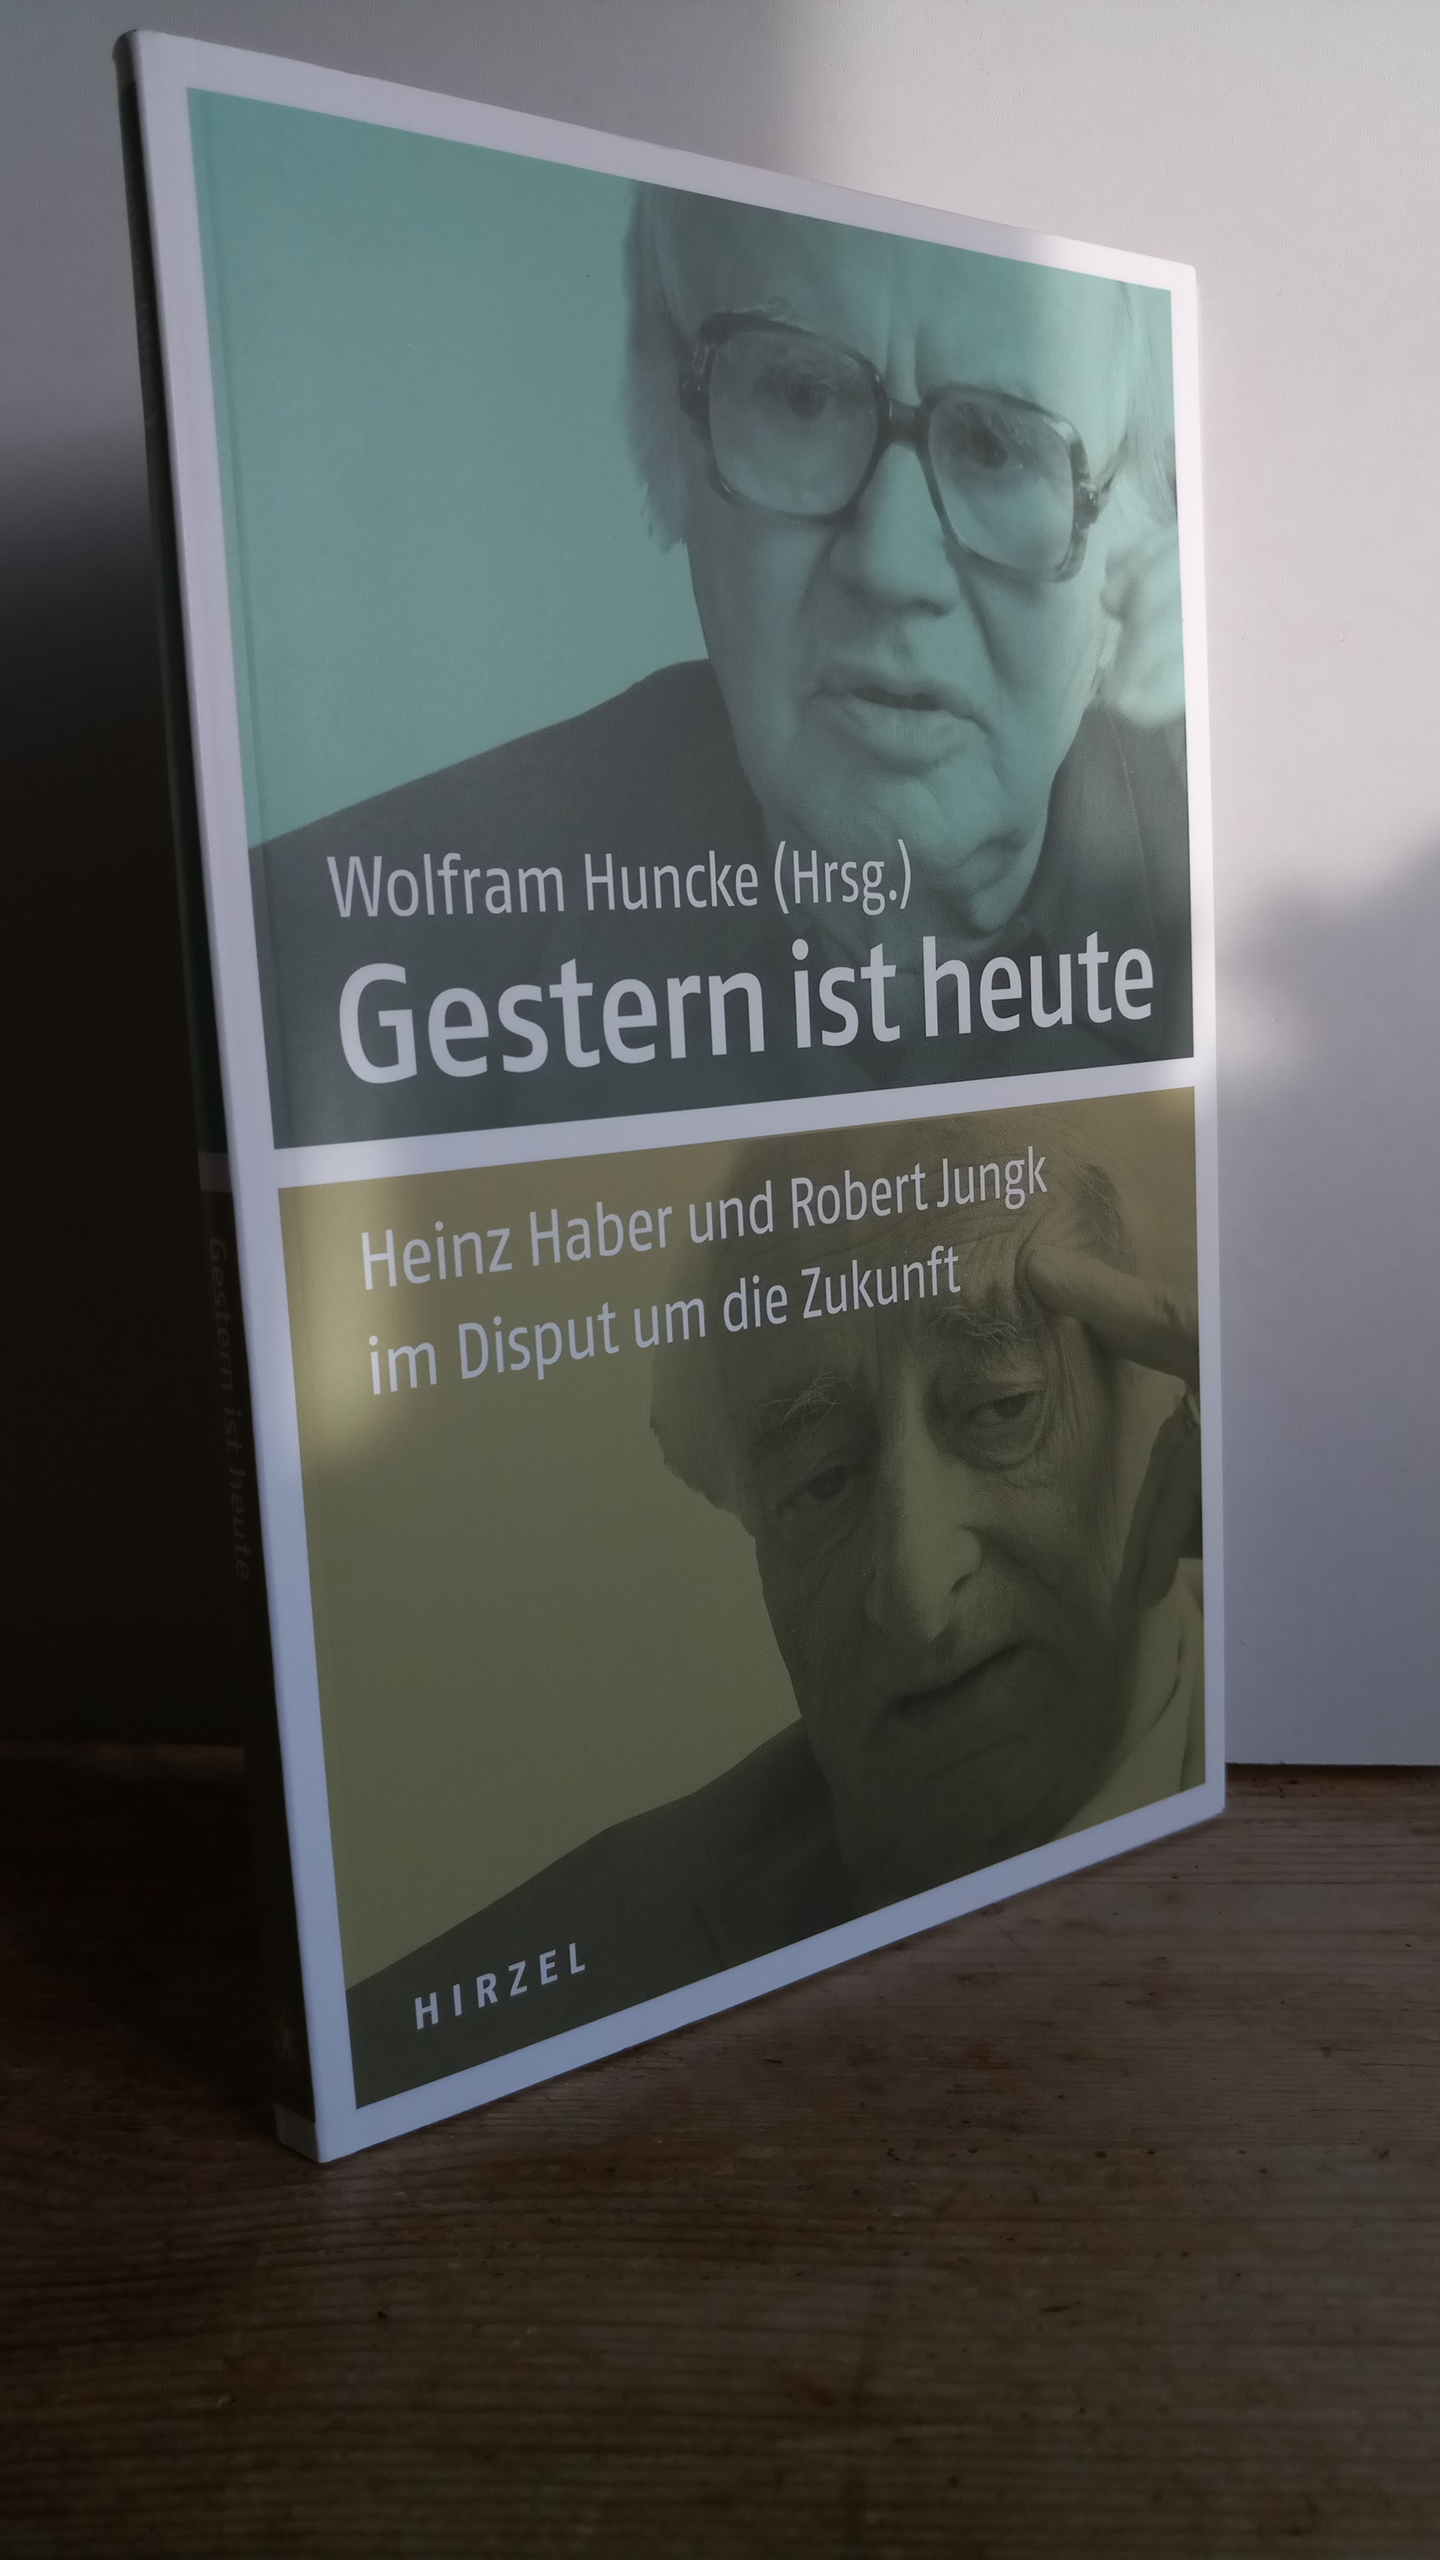 Gestern ist heute : Heinz Haber und Robert Jungk im Disput um die Zukunft. Wolfram Huncke (Hrsg.). Moderation der Gespräche: Wolfram Huncke - Haber, Heinz, Robert Jungk und Wolfram Huncke (Mitwirkender)